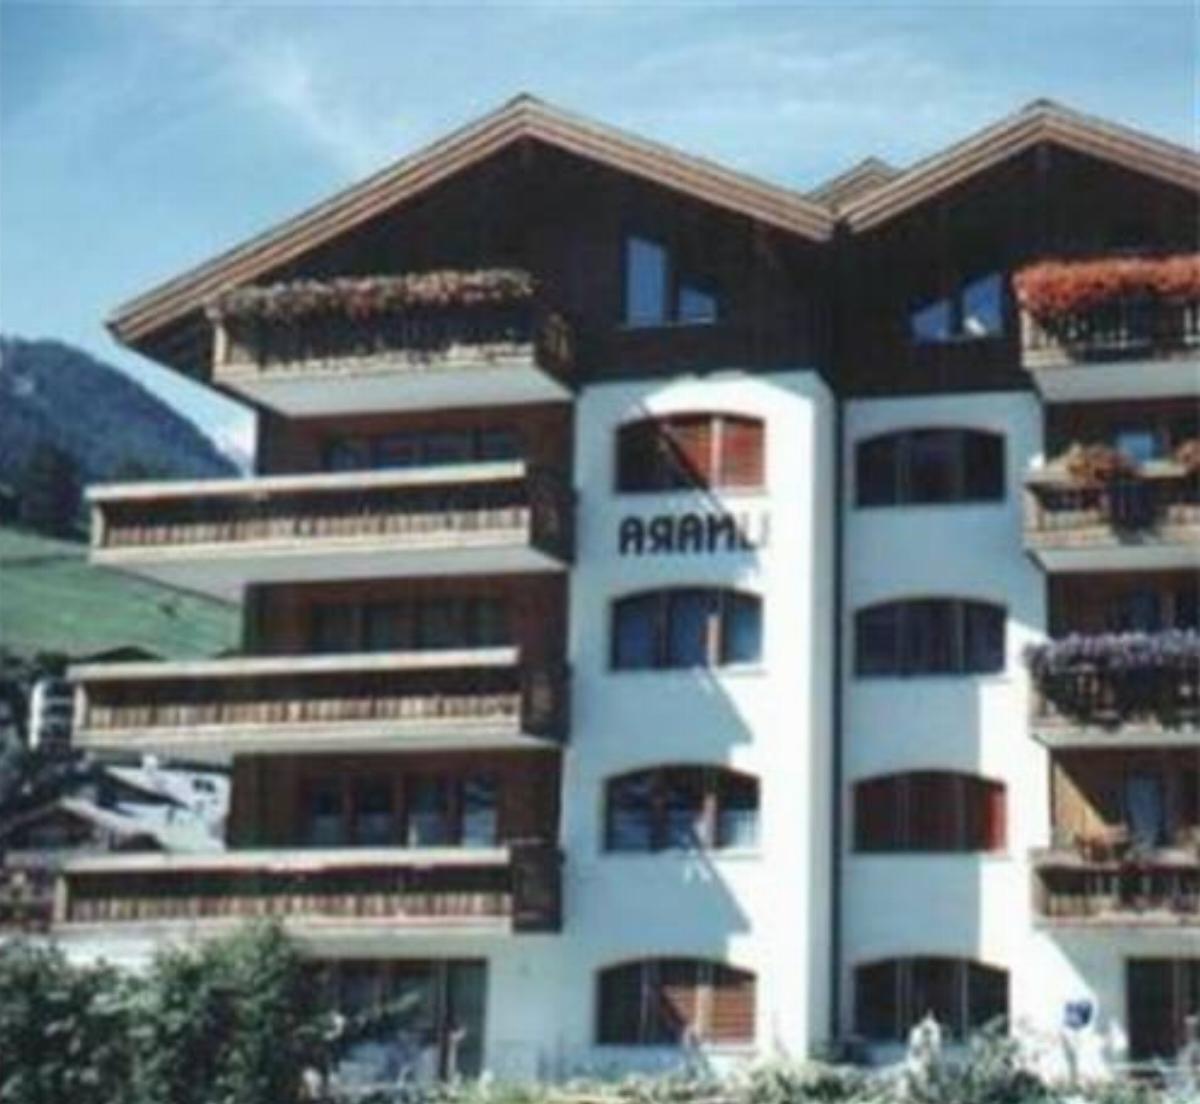 Haus Linara Hotel Zermatt Switzerland